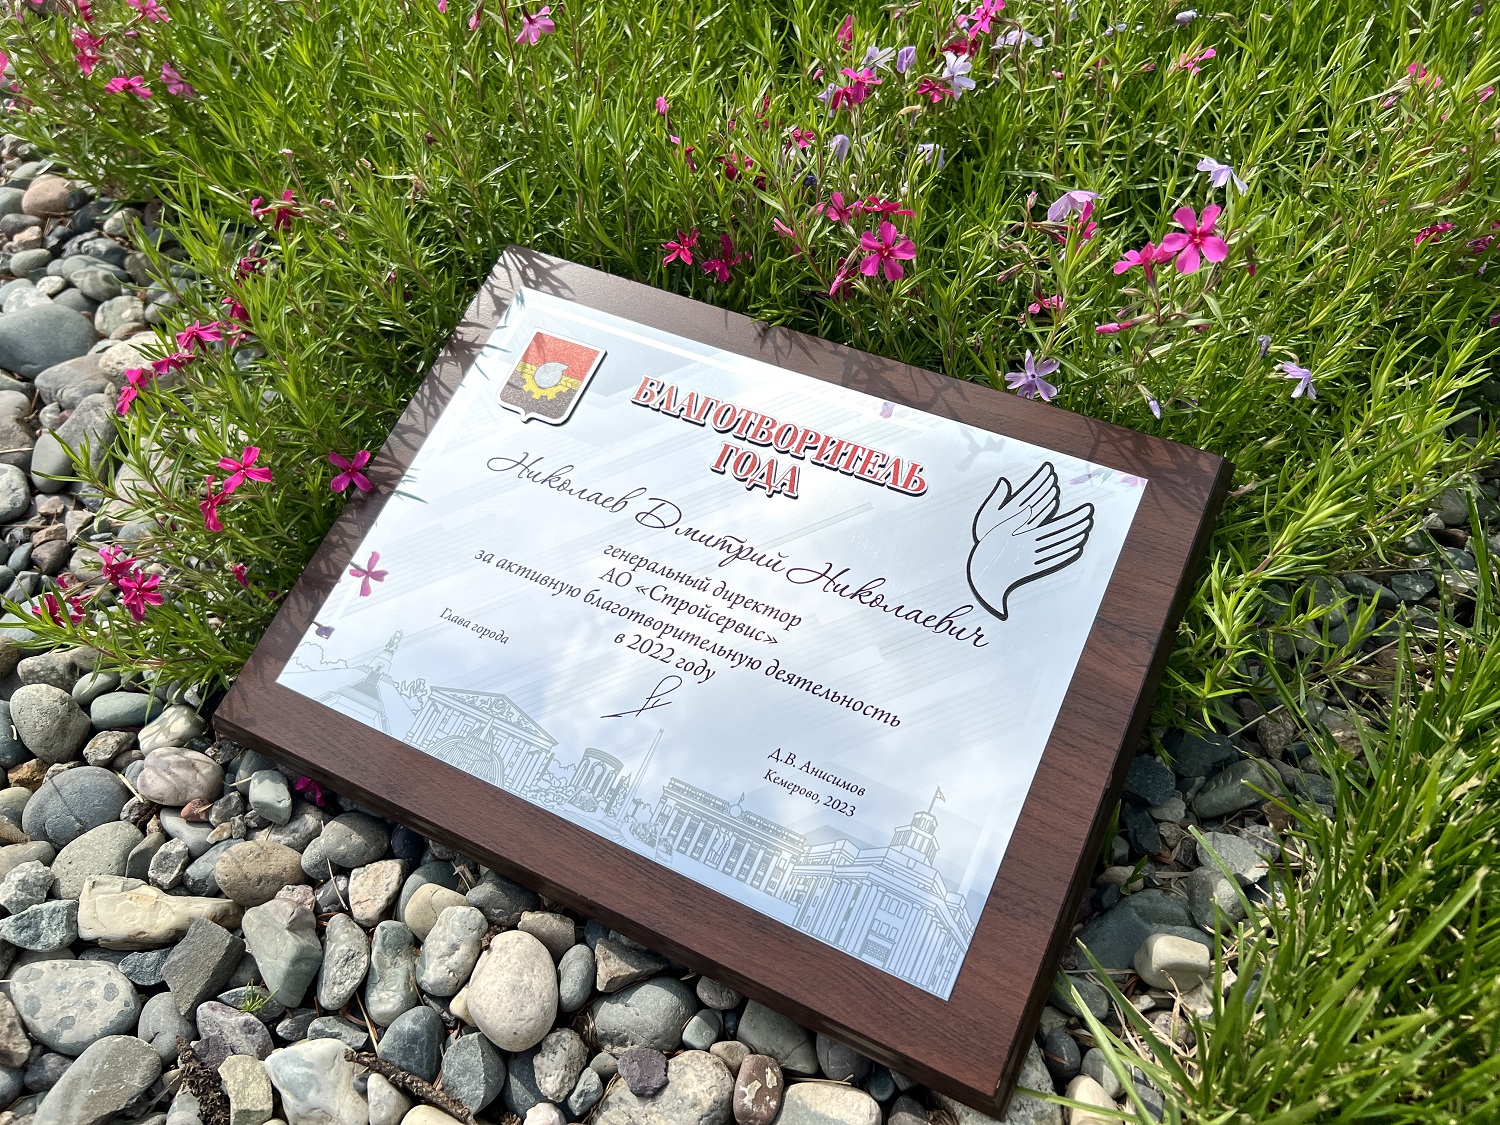 Администрация города Кемерово присвоила почетное звание Благотворитель года компании АО Стройсервис. Стройсервис